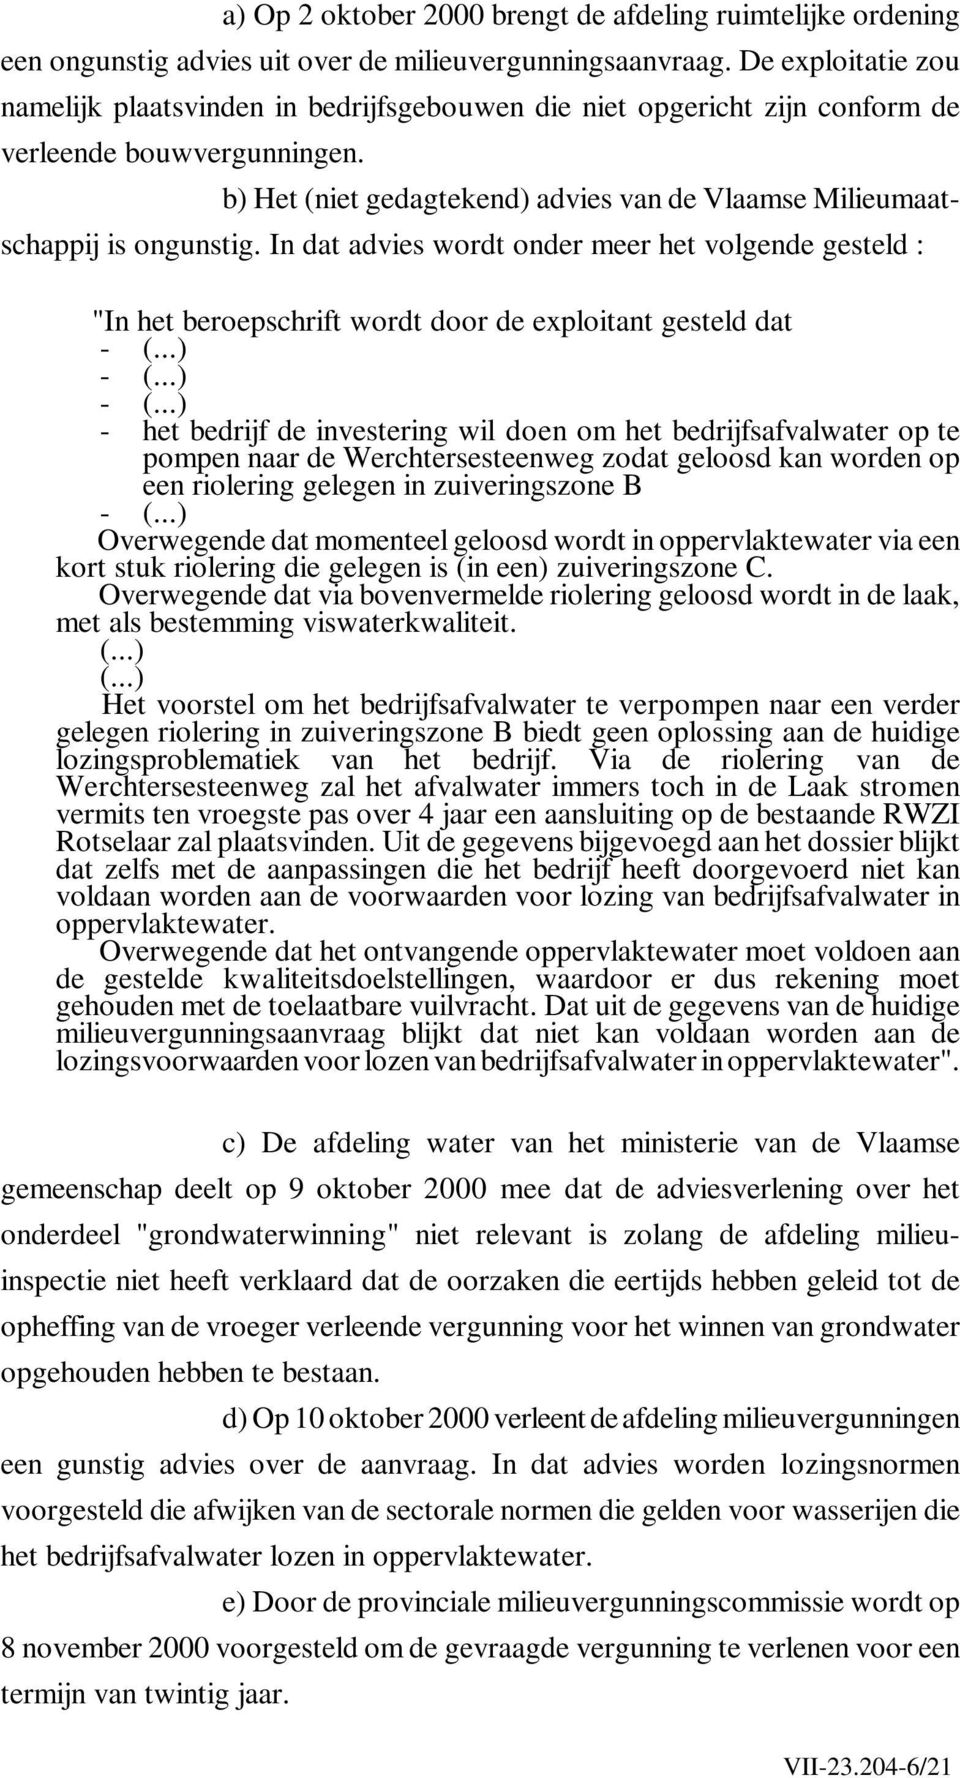 b) Het (niet gedagtekend) advies van de Vlaamse Milieumaatschappij is ongunstig. In dat advies wordt onder meer het volgende gesteld : "In het beroepschrift wordt door de exploitant gesteld dat - (.